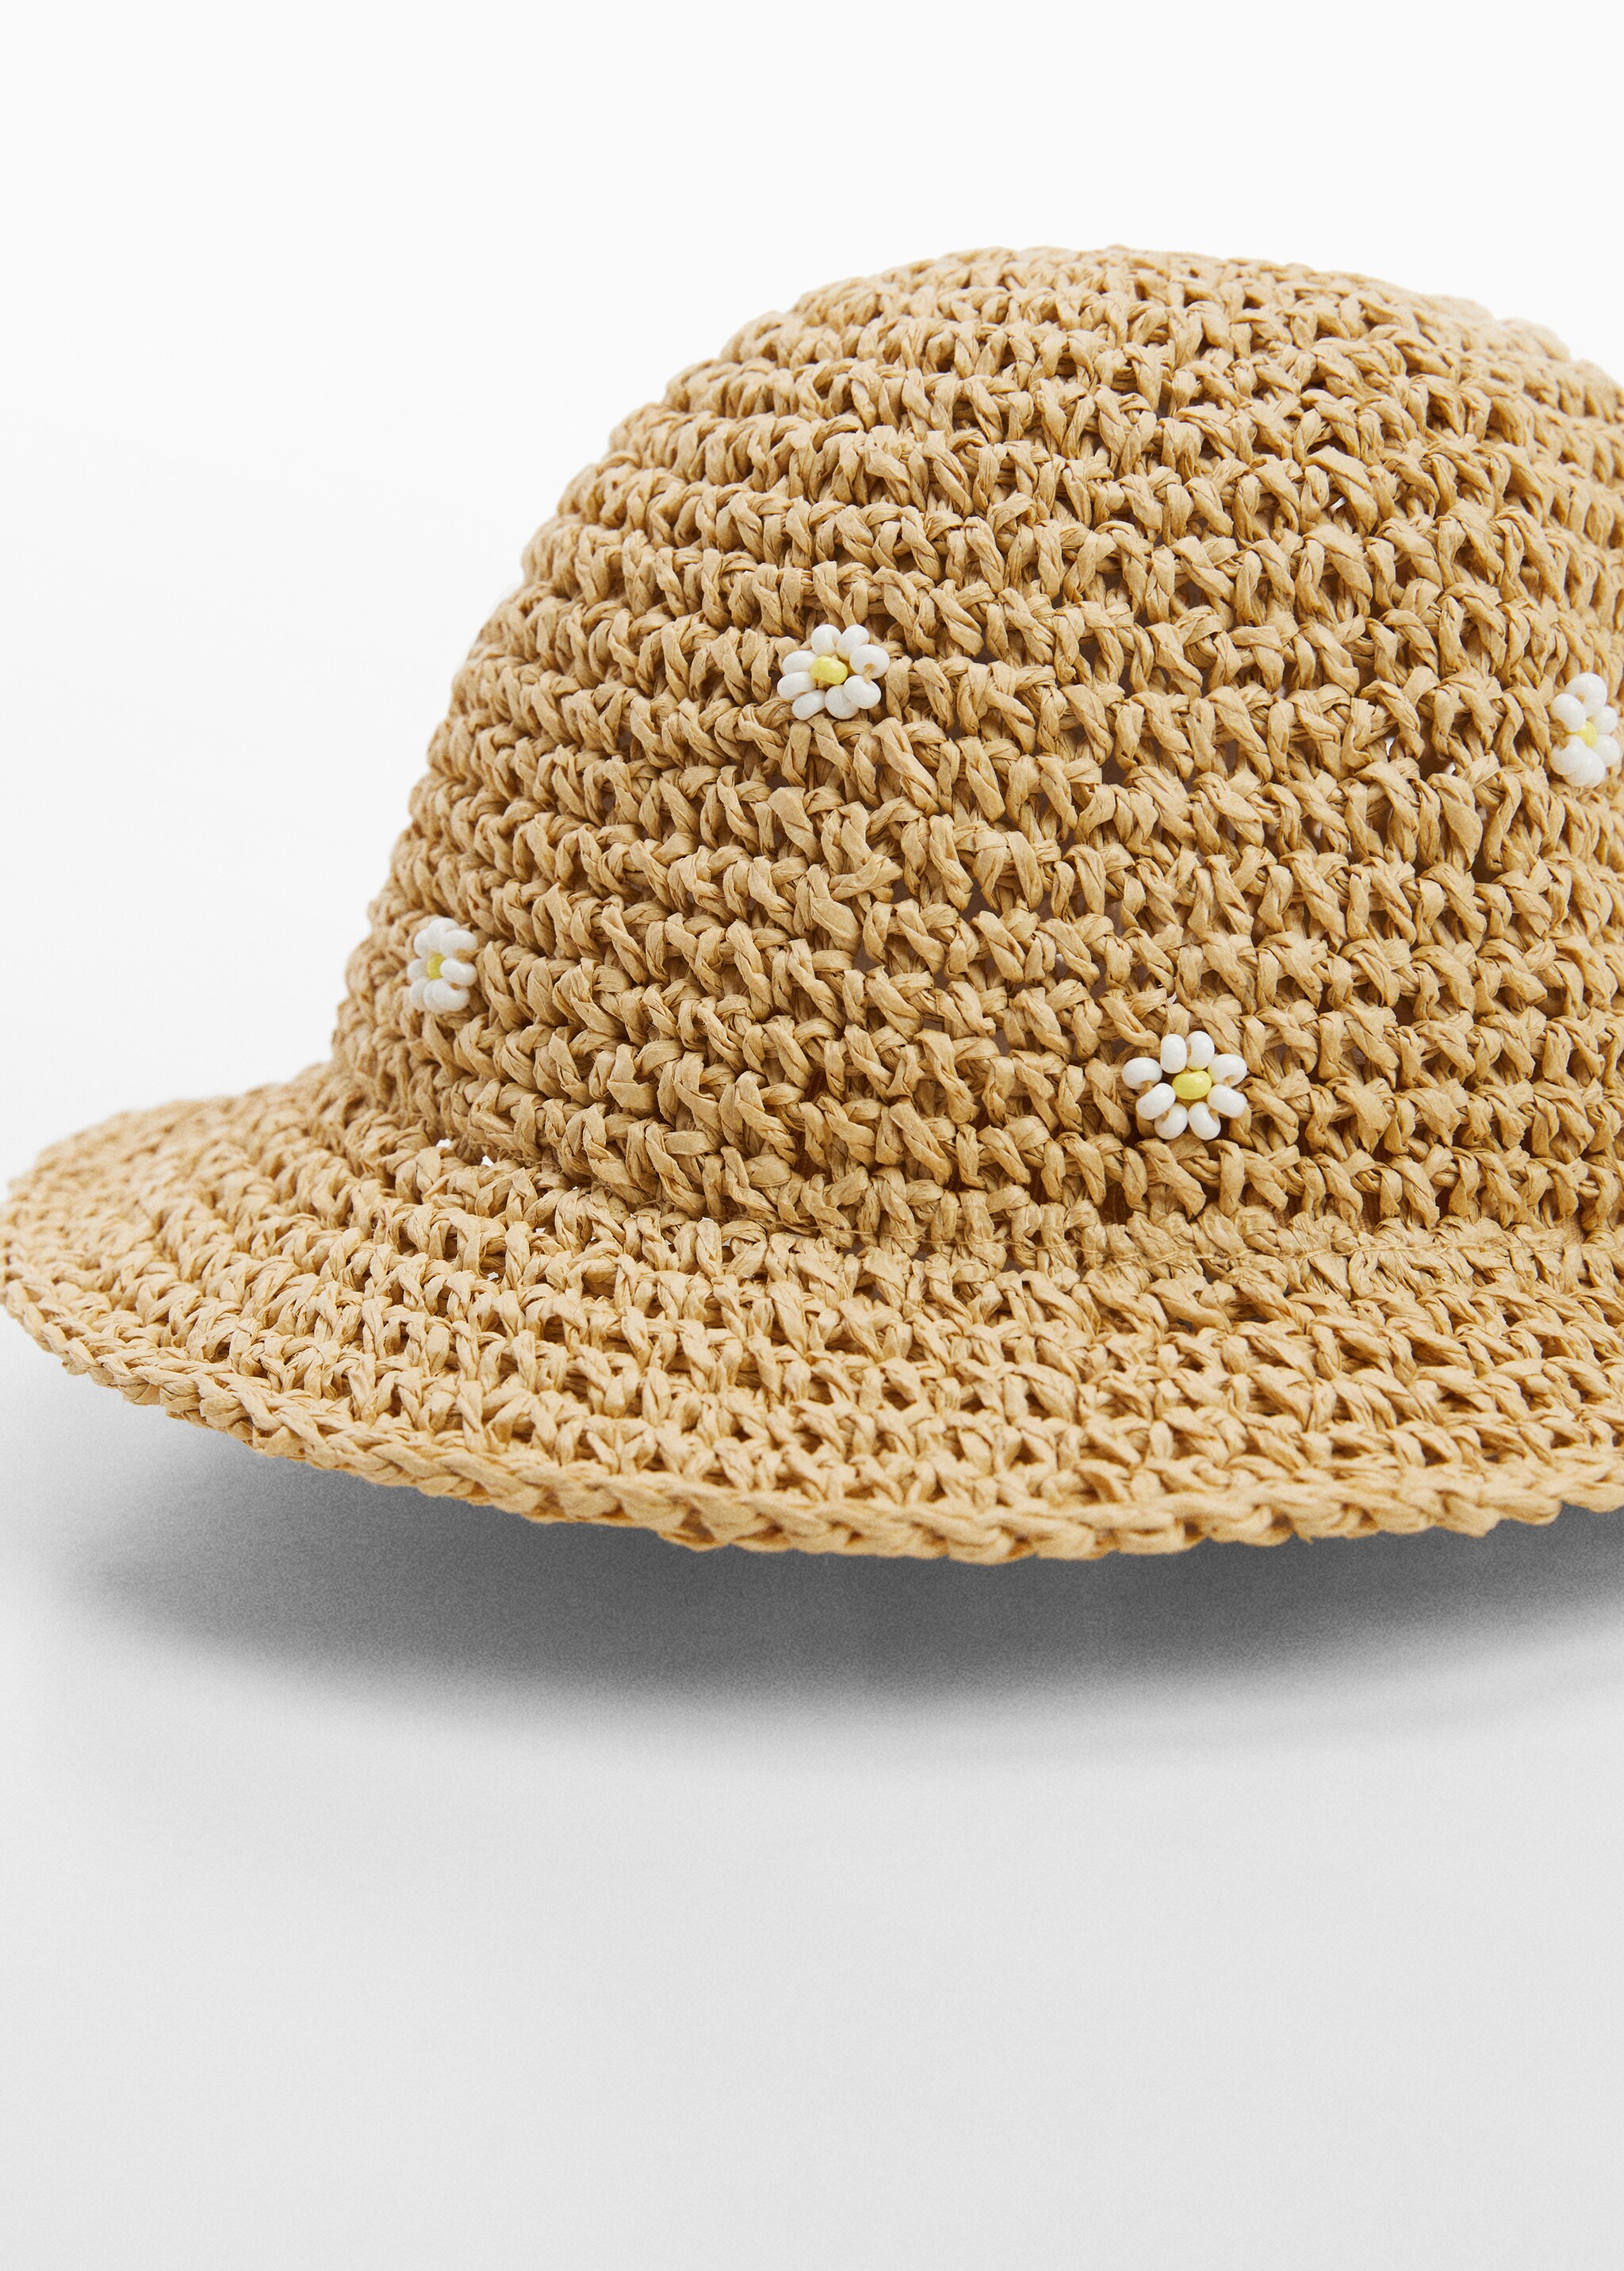 Соломенная шляпа с цветами - Средний план